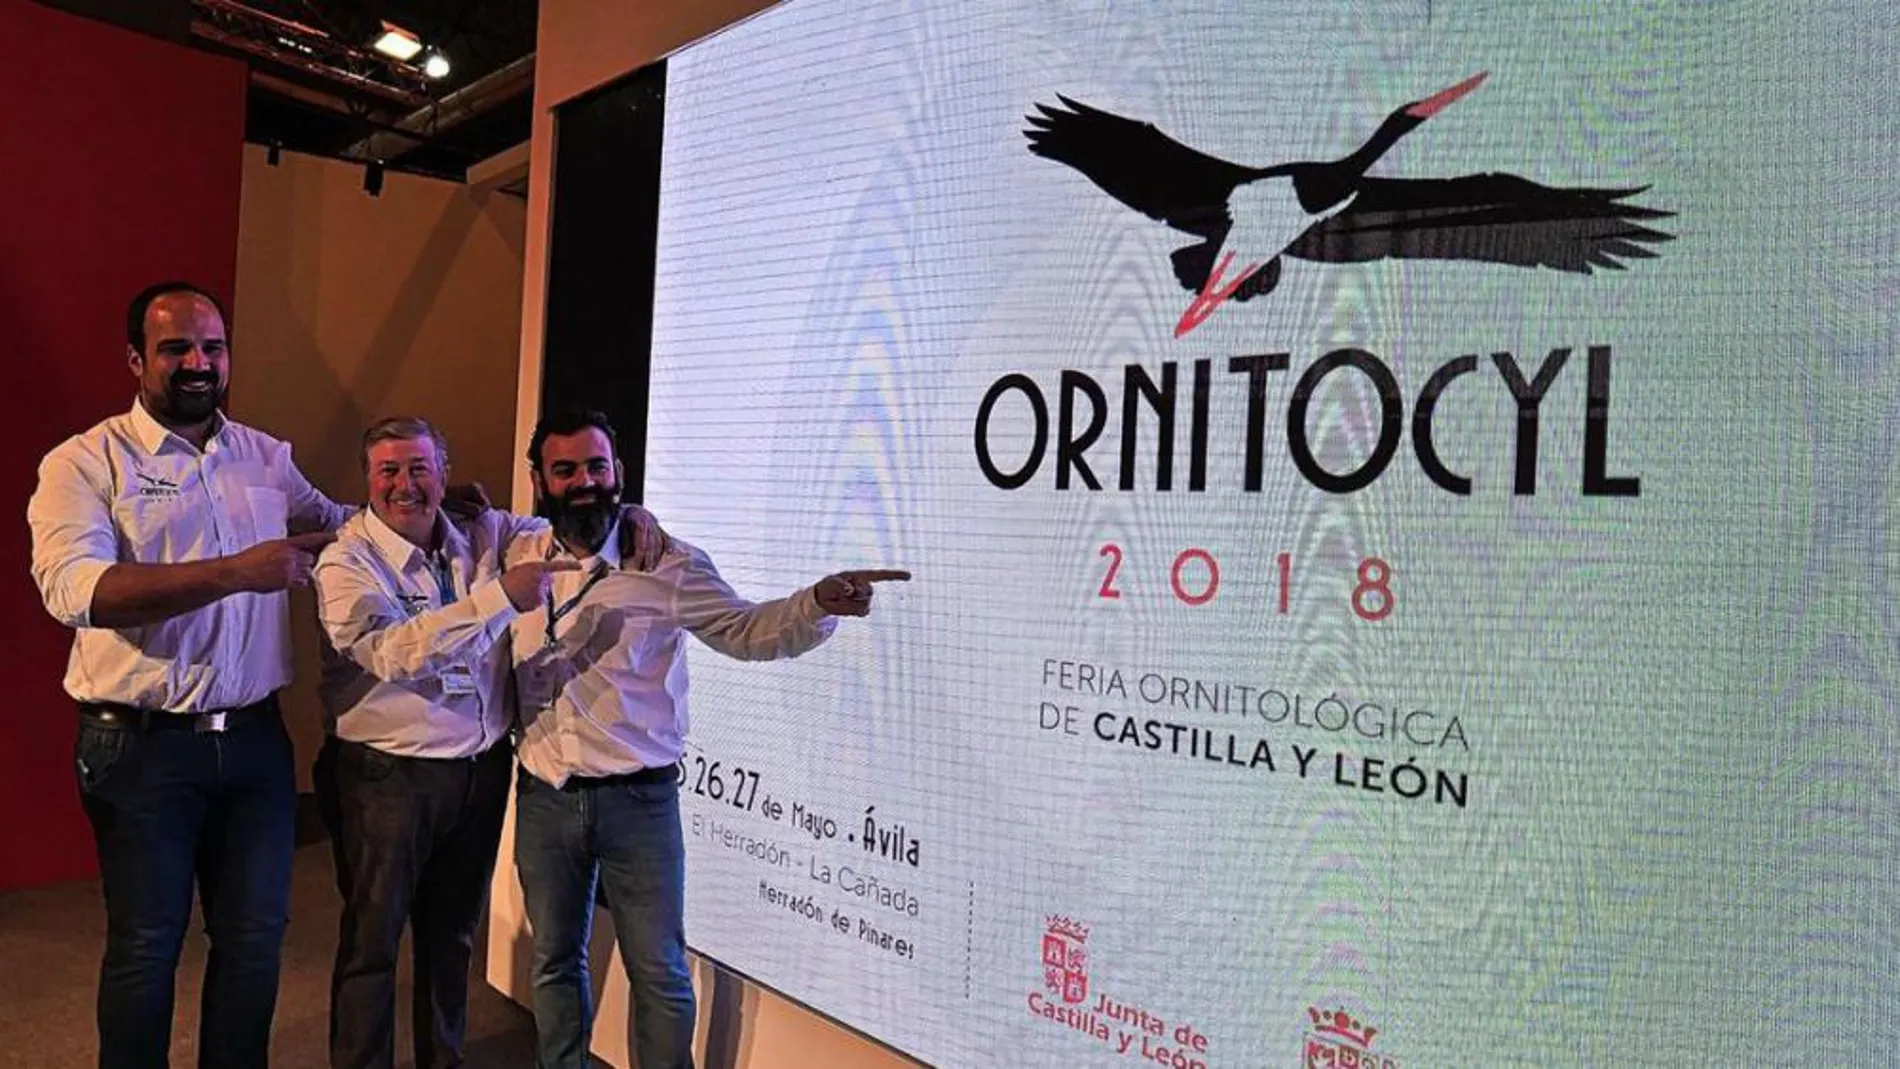 Los responsables de la organización de Ornitocyl Felipe Nebreda, Antonio Vega y Marco Antonio Rufes durante la presentación del certamen / La Razón